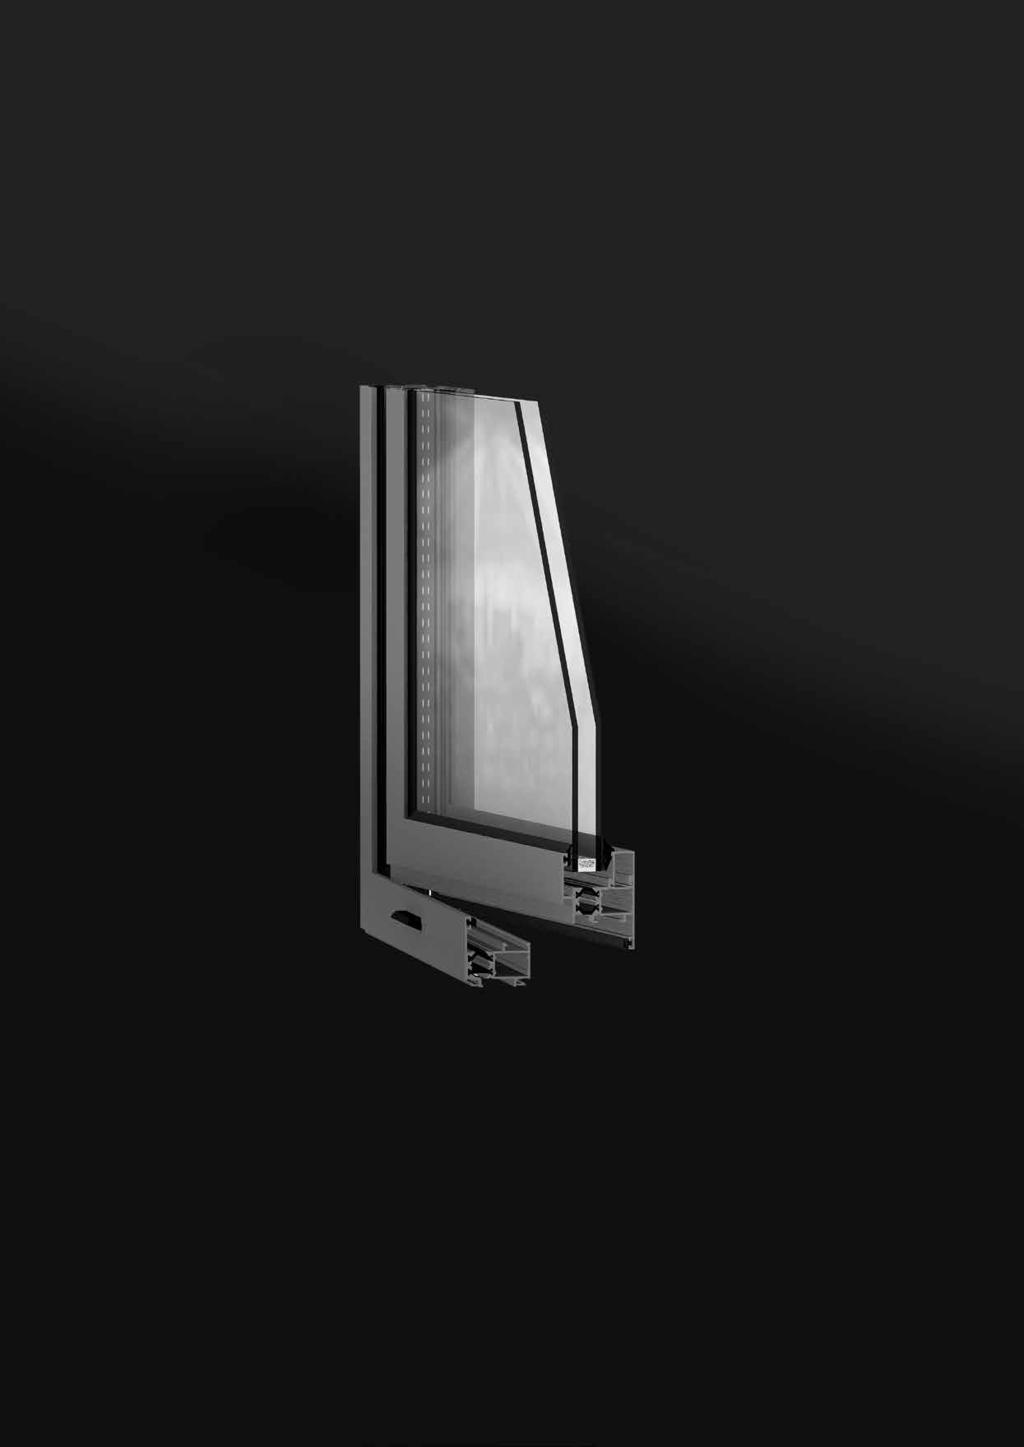 FORMA THERMIC, la ventana básica Características Estética Cremona ergonómica diseño exclusivo. Posibilidad de herraje oculto. Amplia gama de perfiles con diseño exterior recto o curvo.